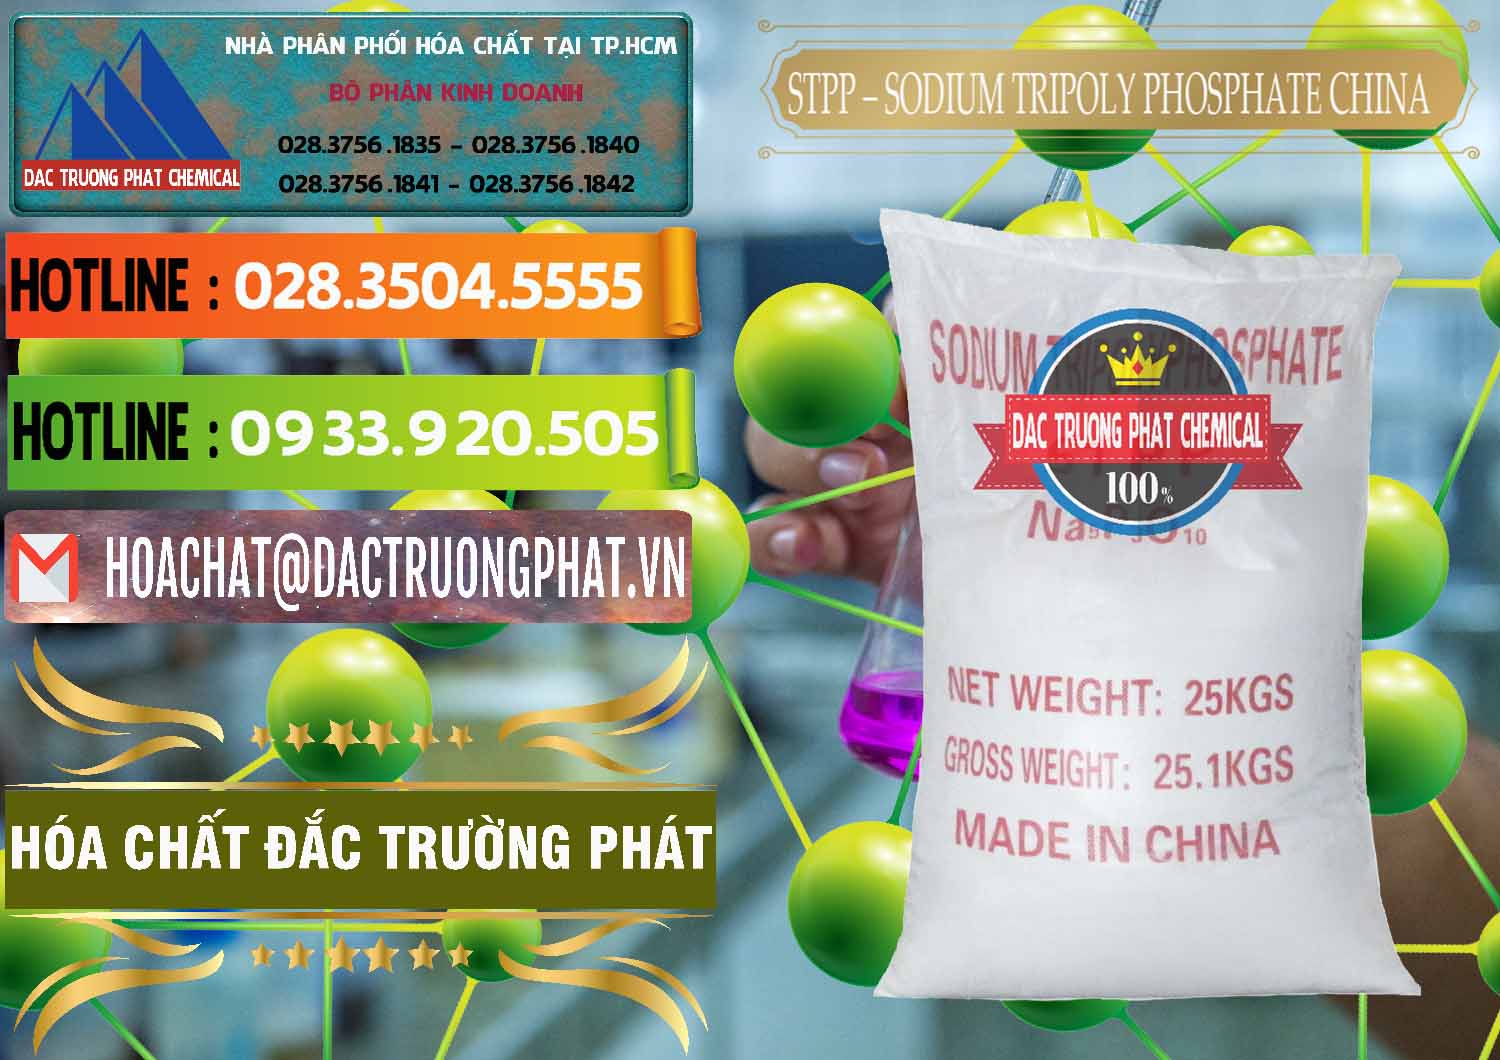 Nơi bán và cung ứng Sodium Tripoly Phosphate - STPP 96% Chữ Đỏ Trung Quốc China - 0155 - Nơi cung cấp - phân phối hóa chất tại TP.HCM - cungcaphoachat.com.vn